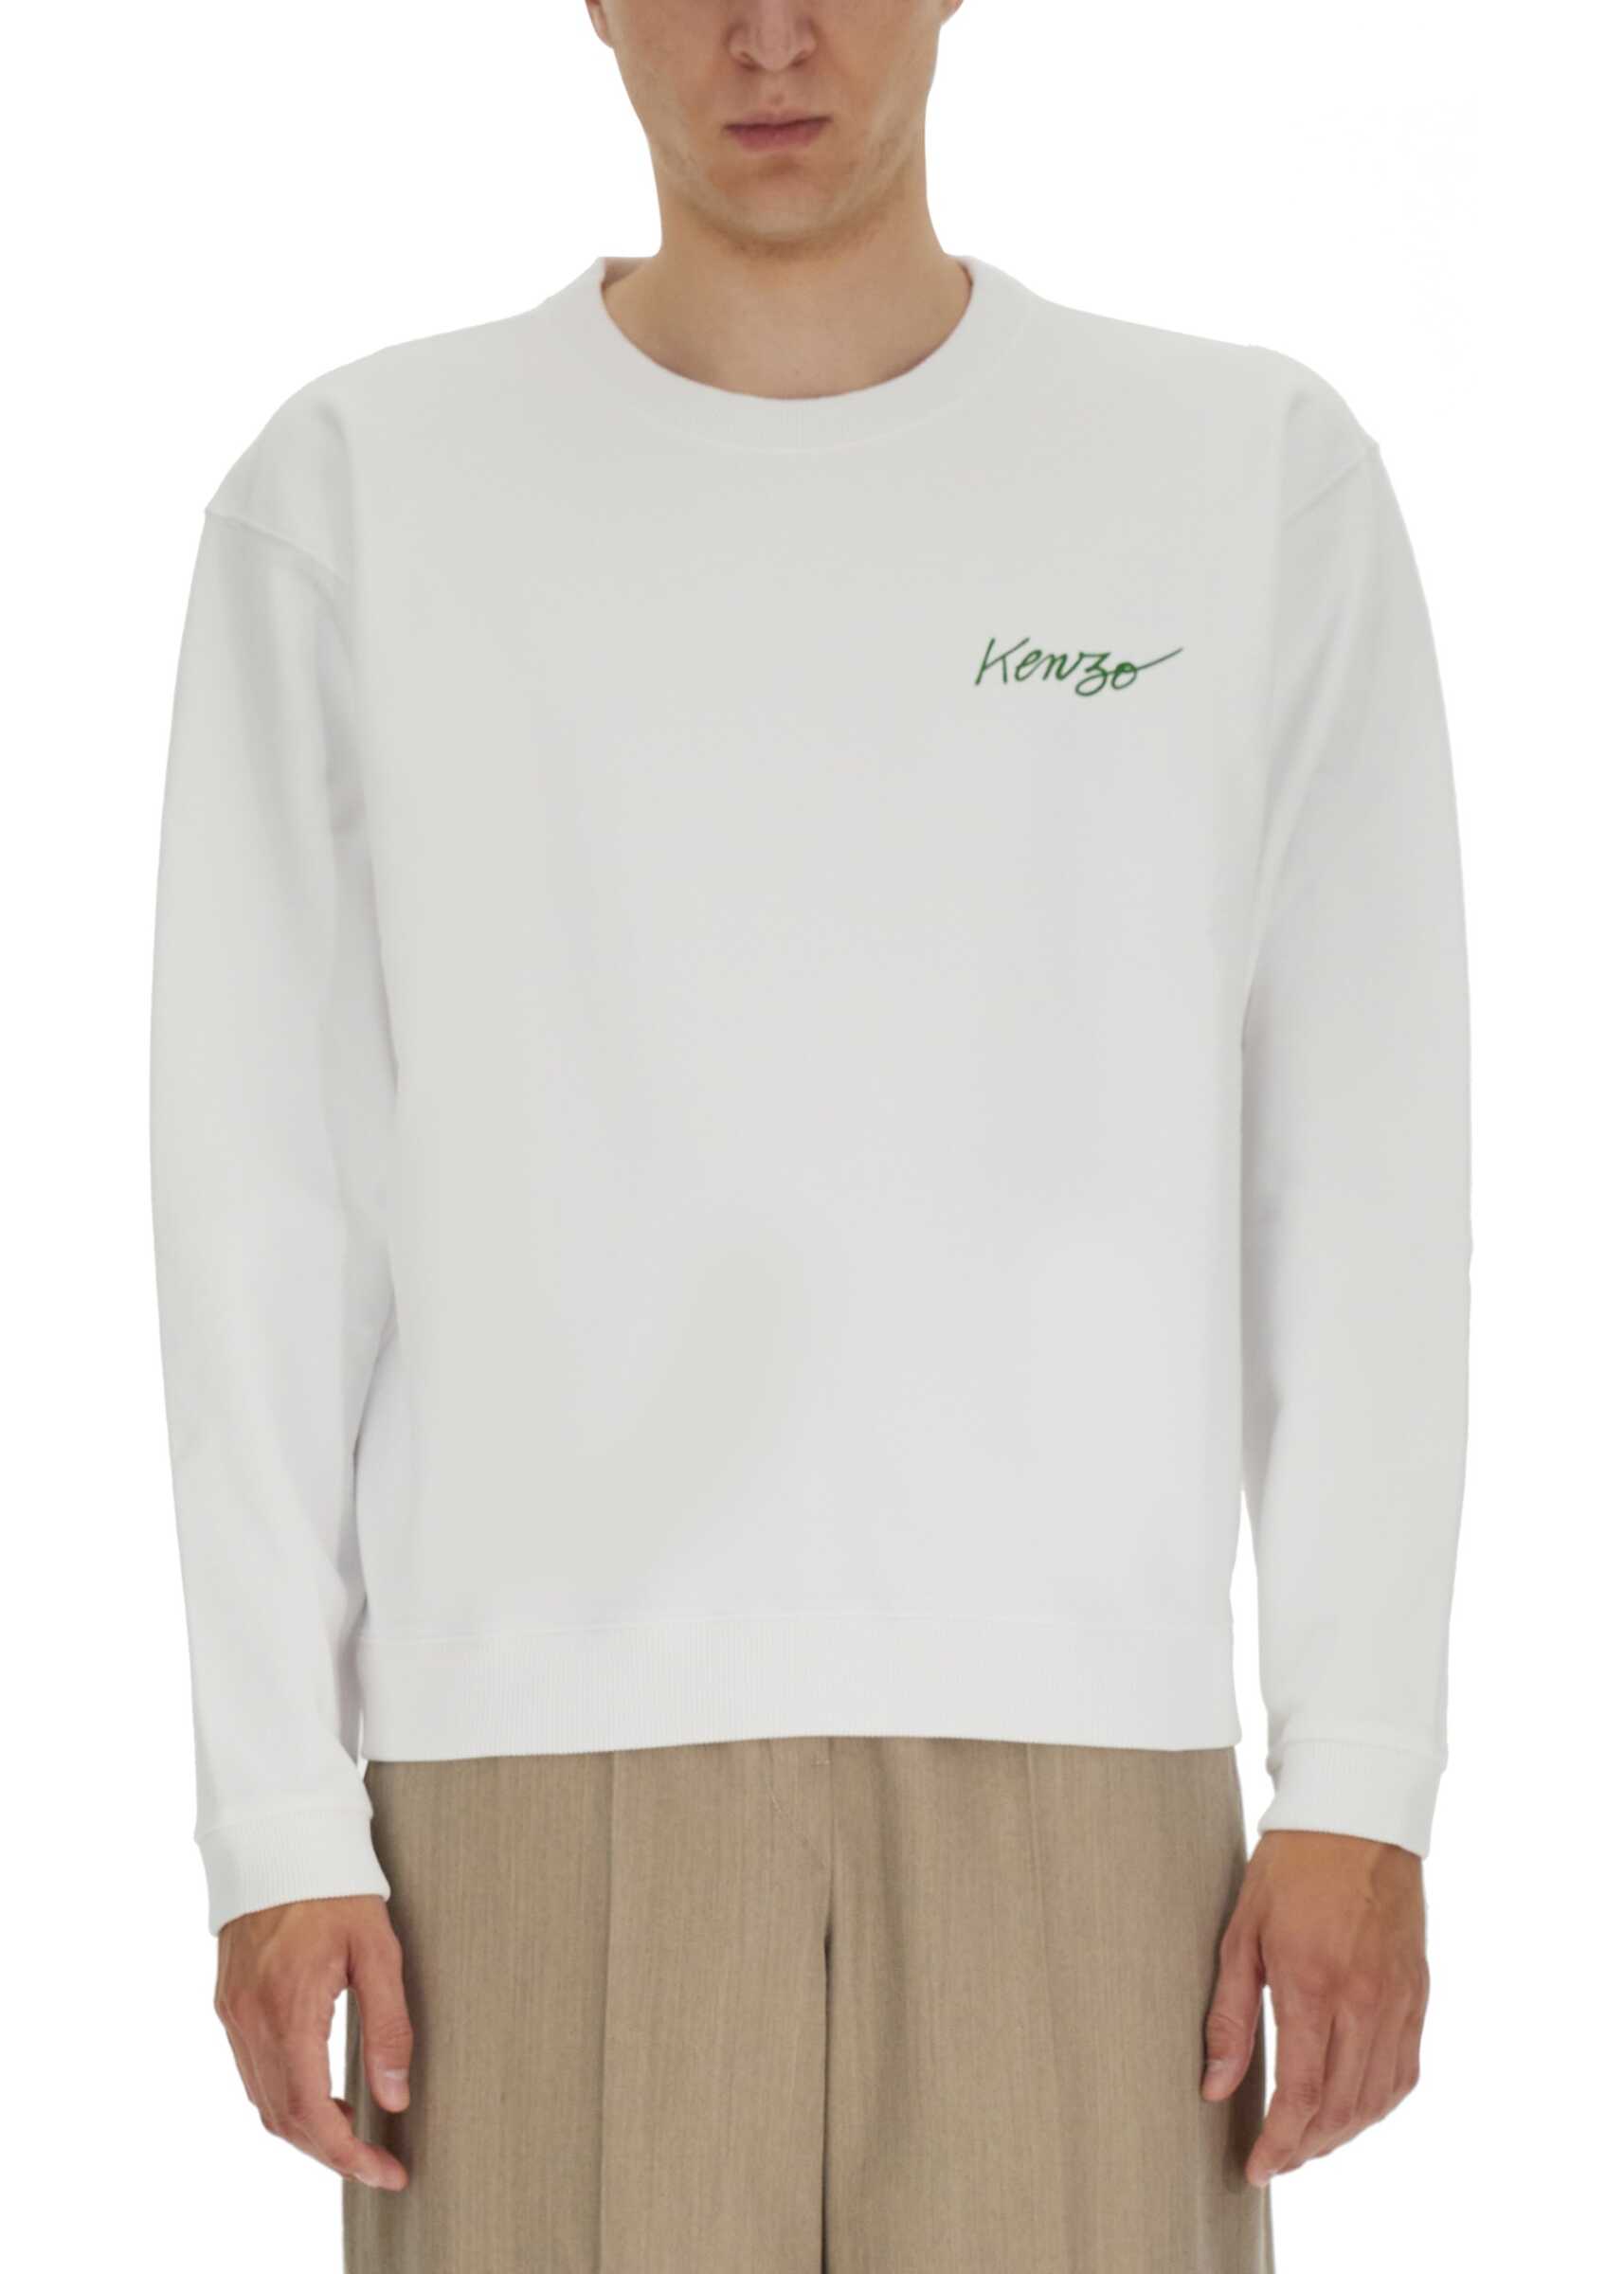 Kenzo "Poppy" Sweatshirt WHITE